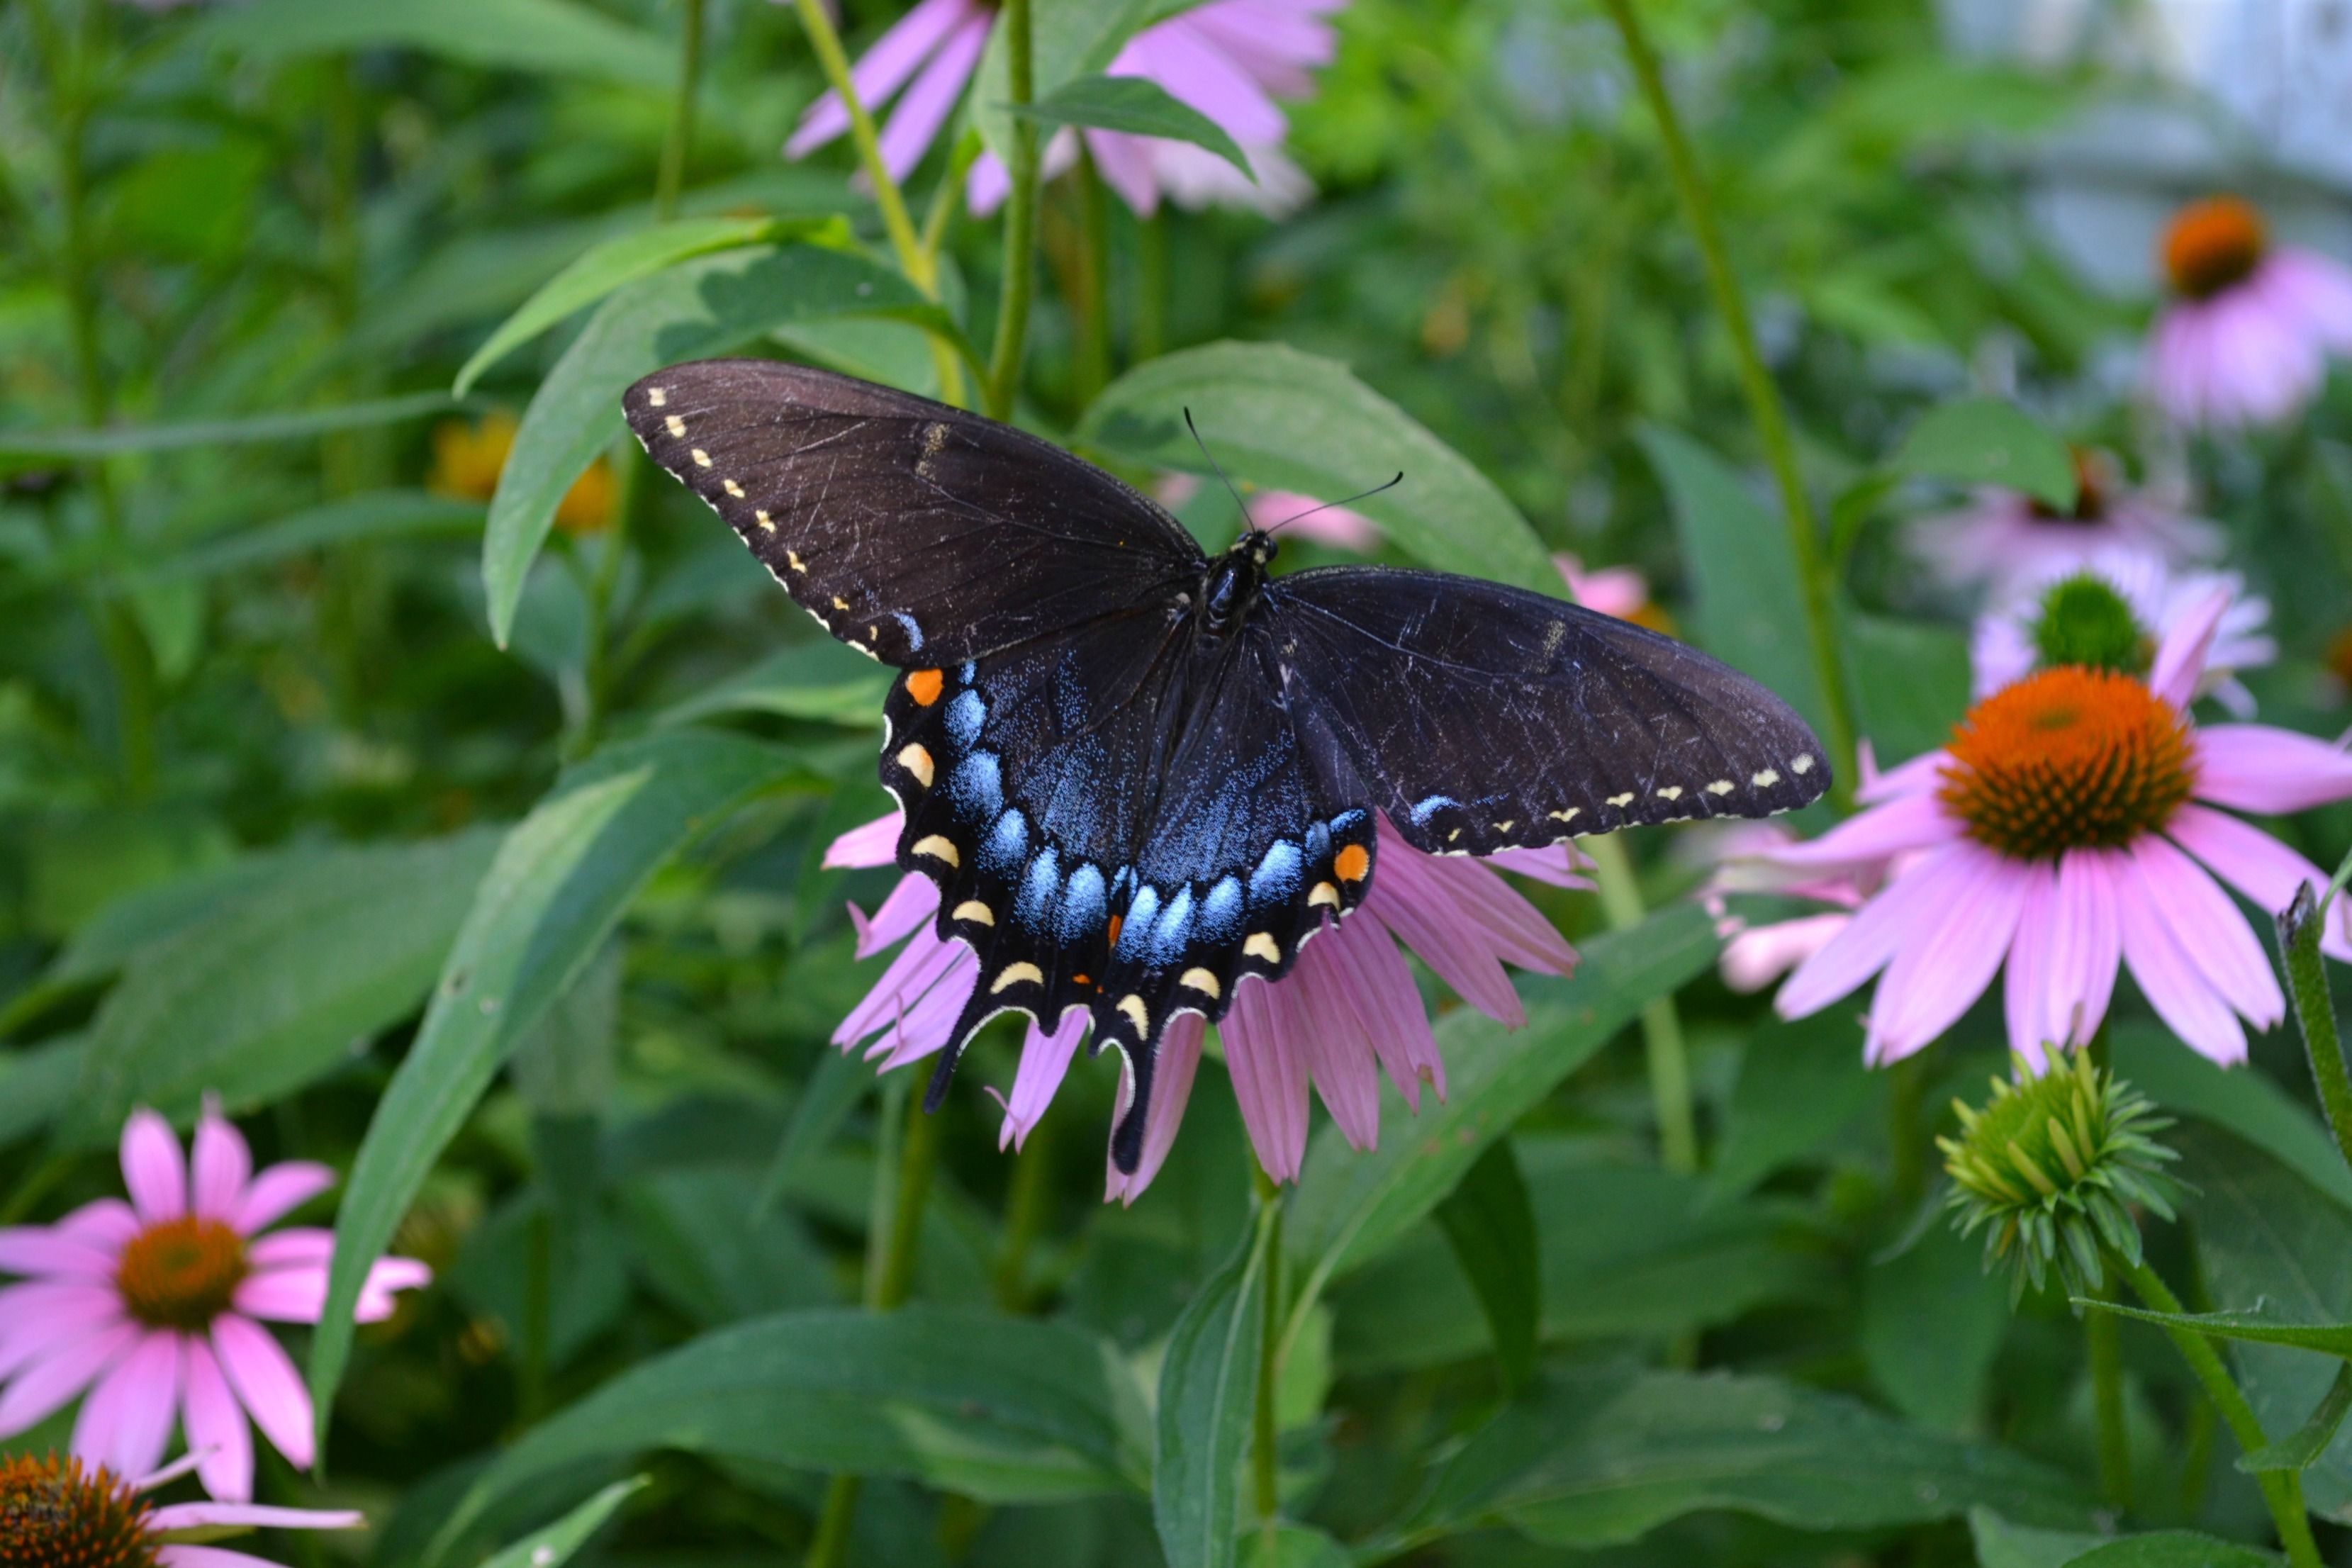 Black swallowtail butterfly on purple coneflower plant 